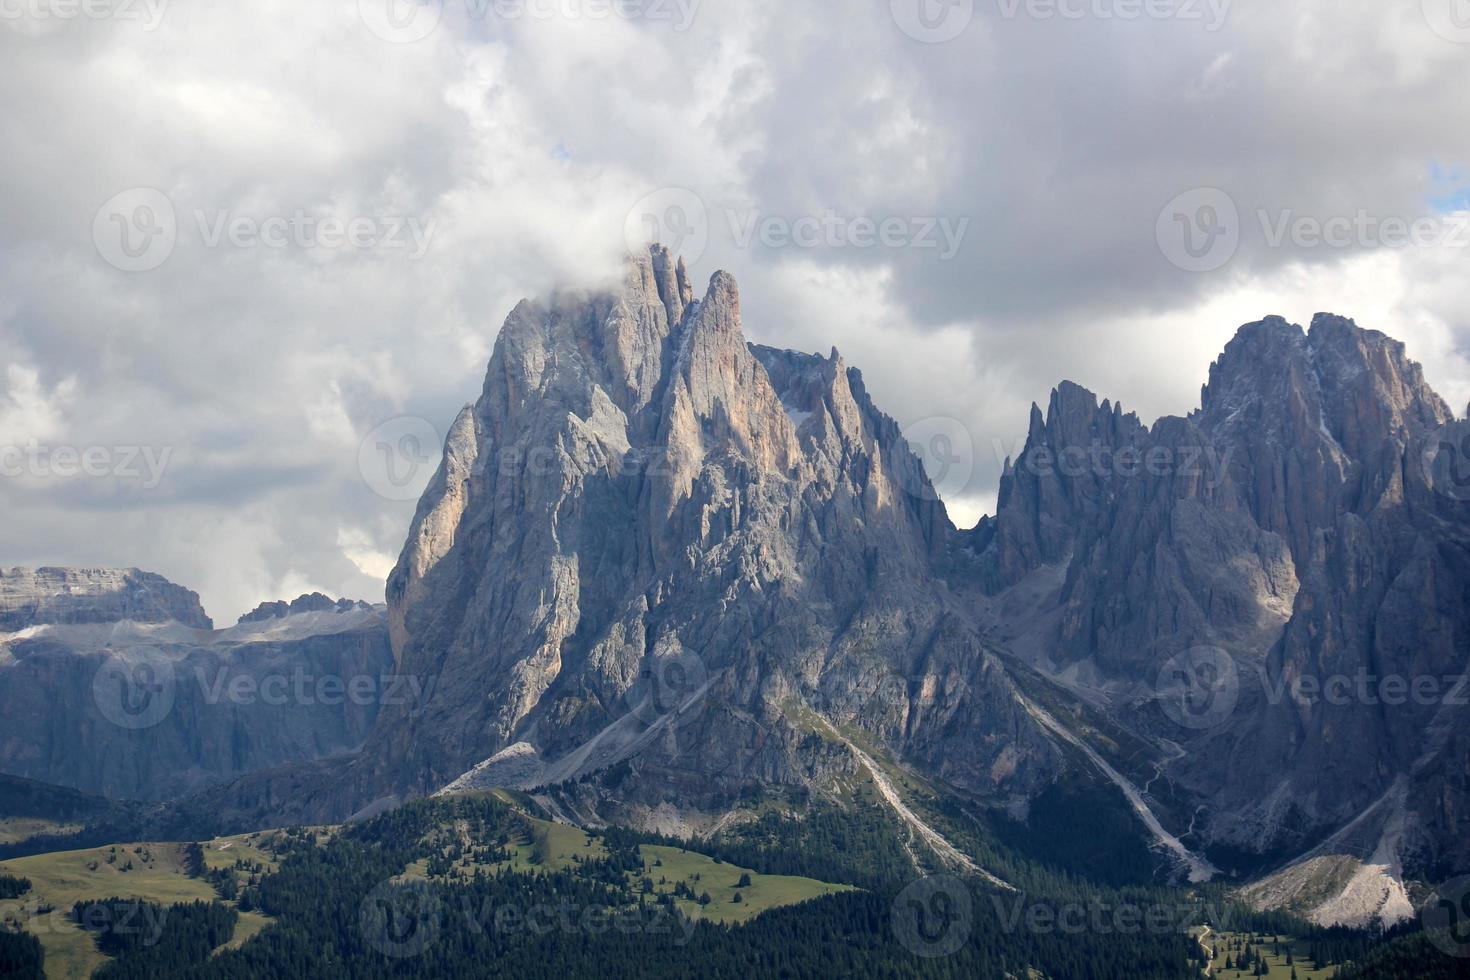 dolomieten - een berg reeks in de oostelijk Alpen foto